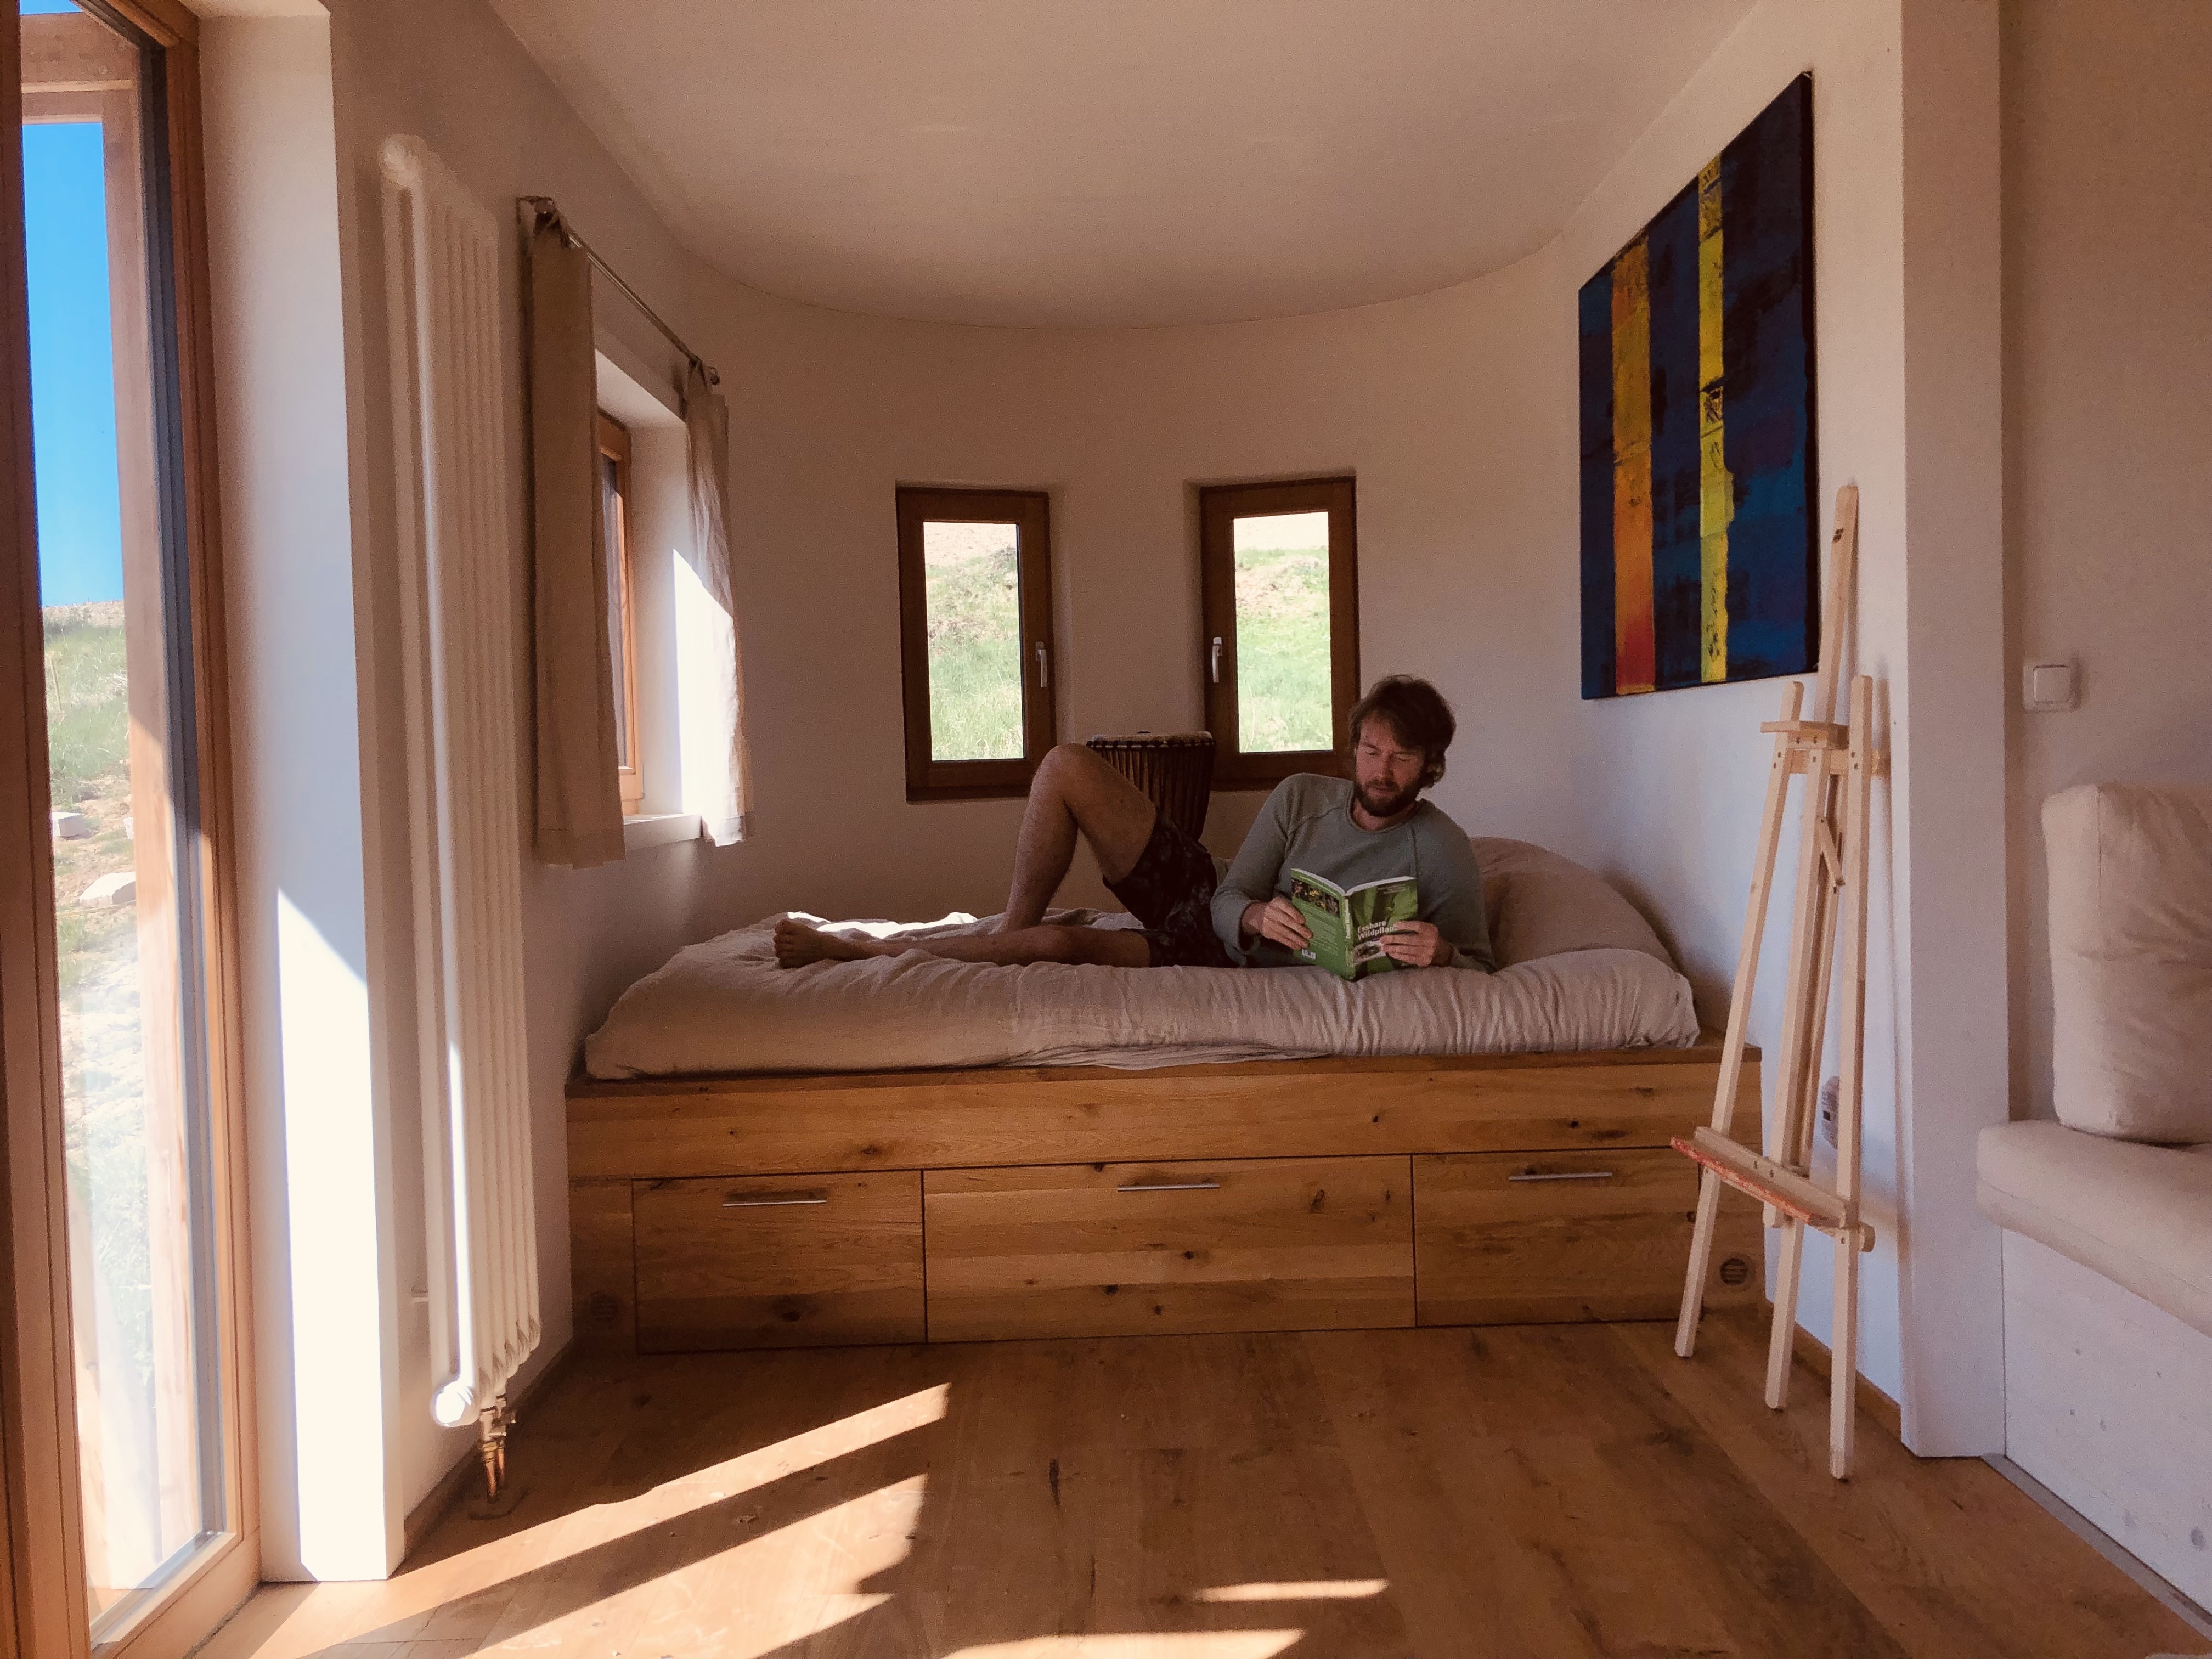 Michael Mey auf seinem Bett in seinem Tiny House